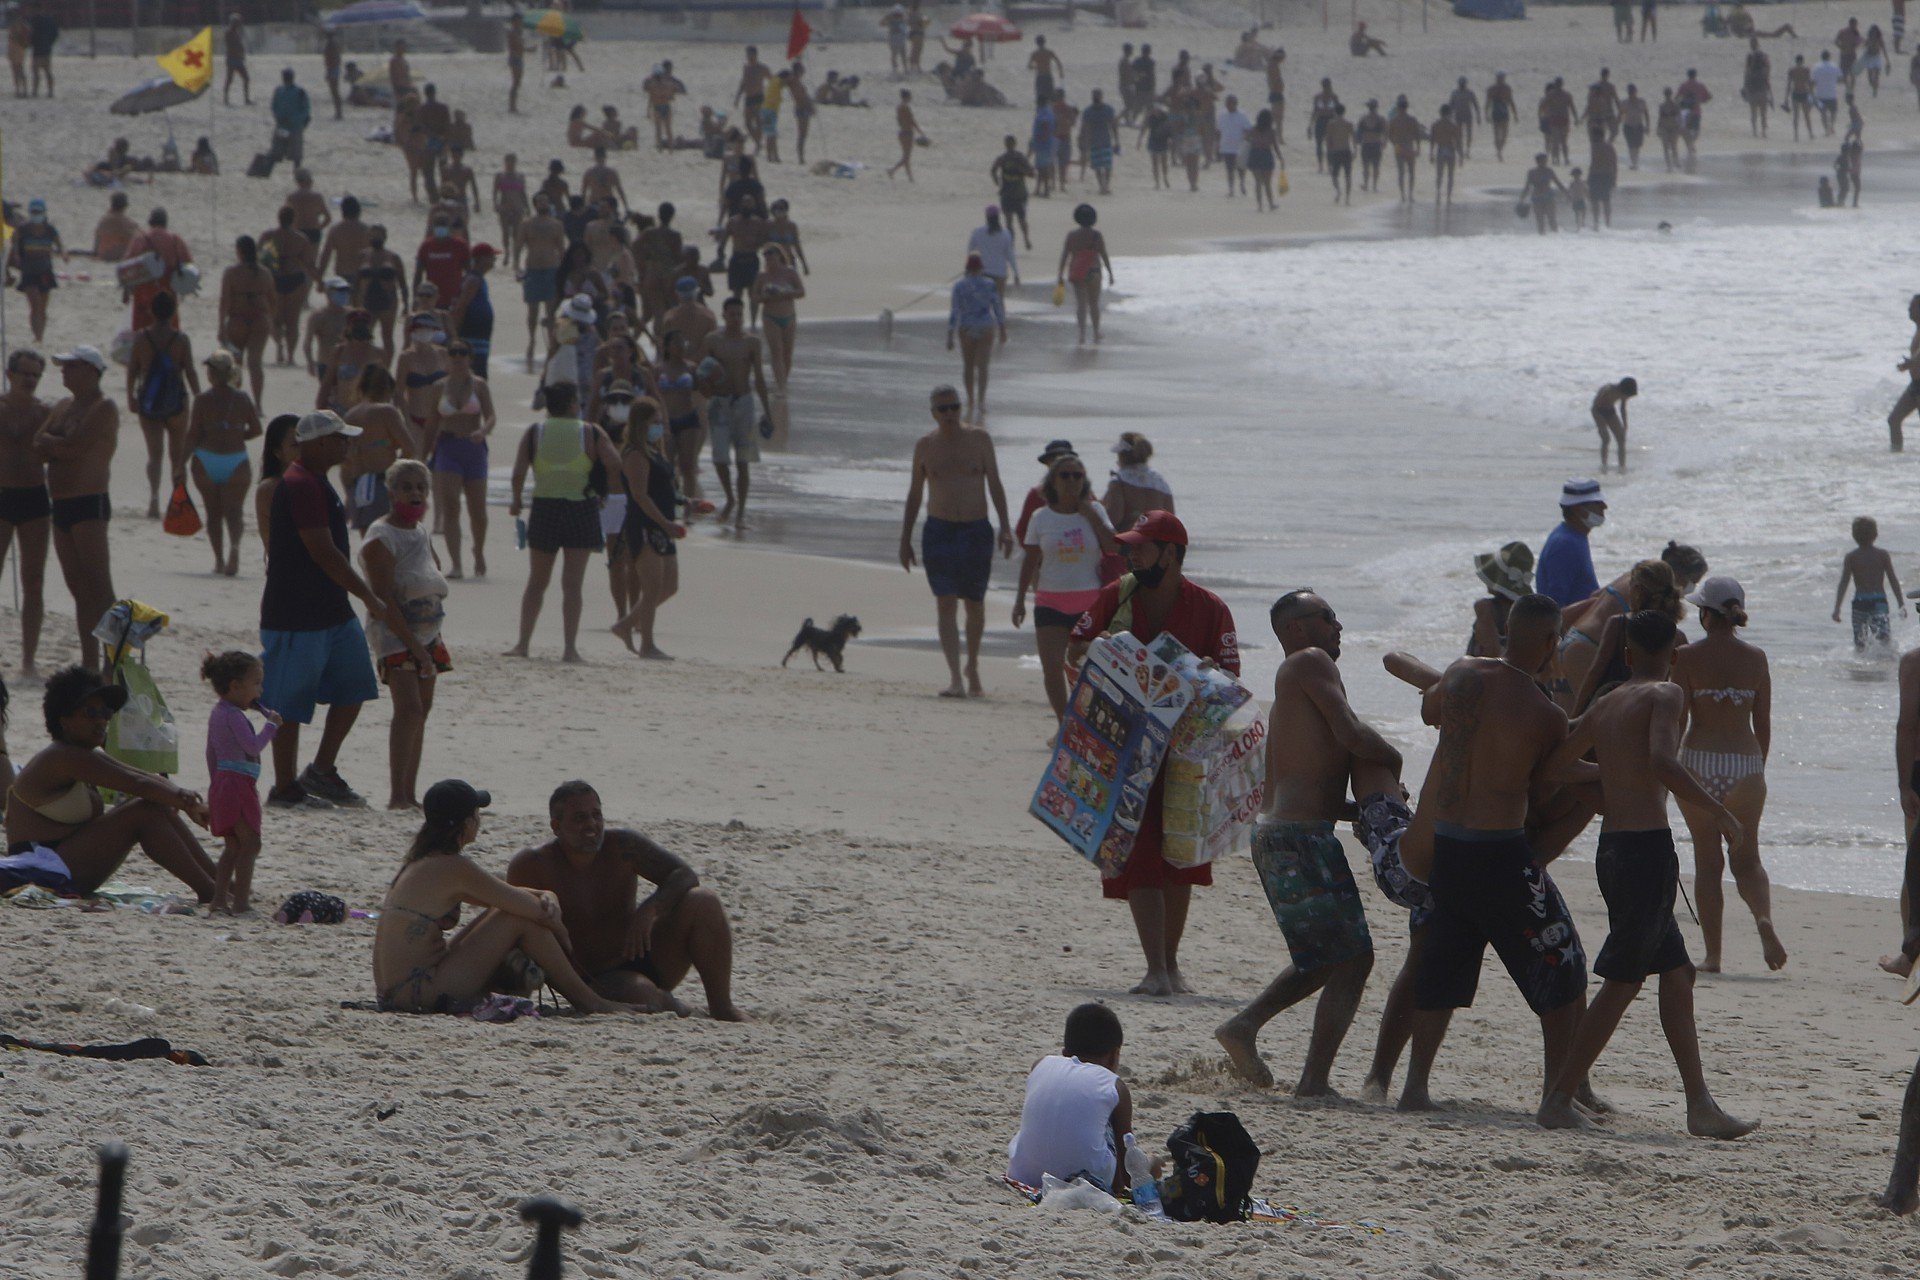 Movimentação na Praia de Copacabana nesta manhã de domingo - Reginaldo Pimenta / Agencia O Dia